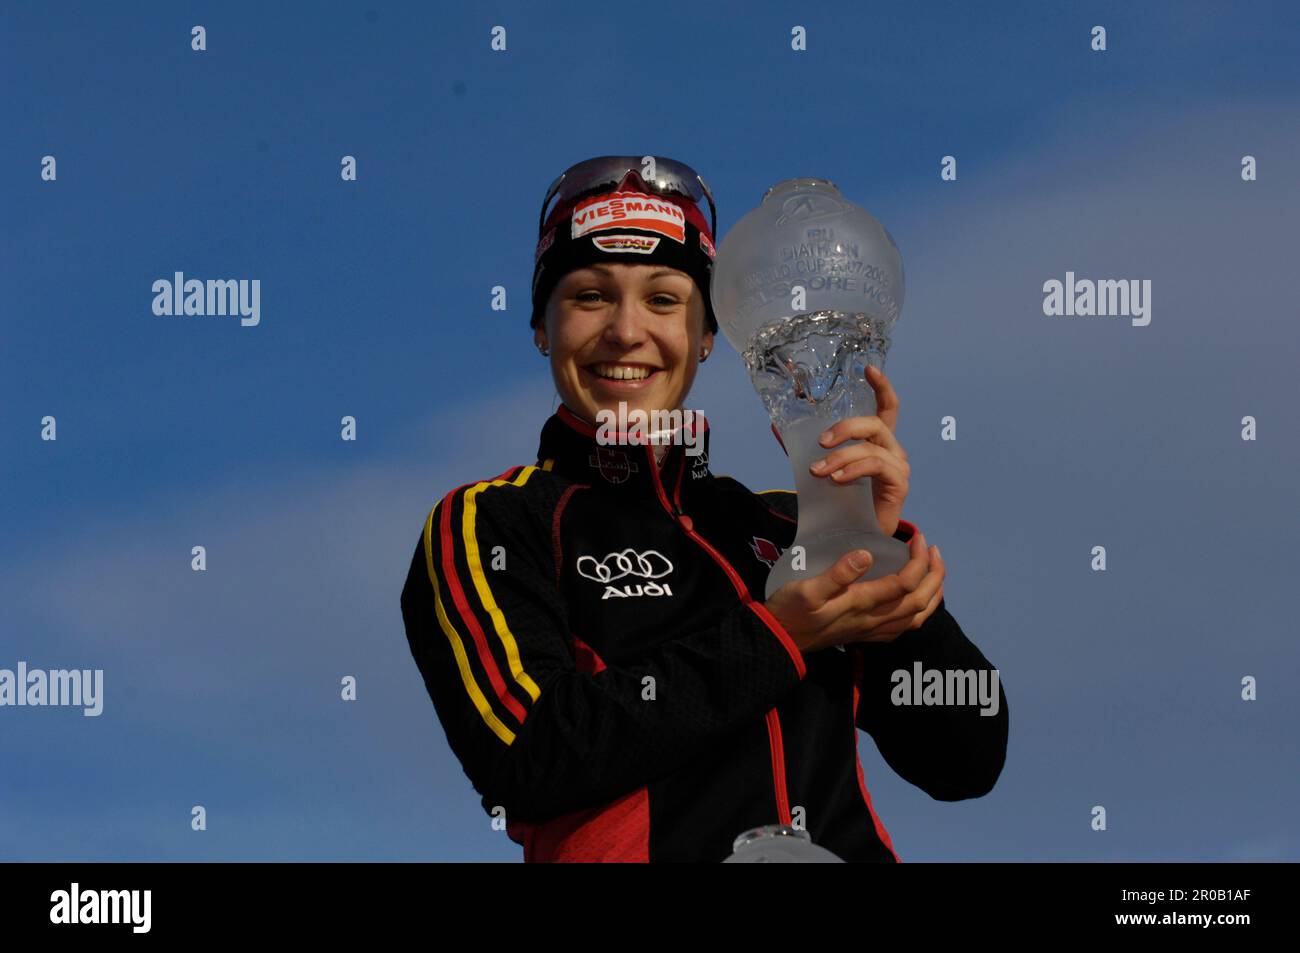 Magdalena Neuner, die Gesamt Welt Cup Siegerin mit den Pokal für den Gesamtweltcup, Biathlon 10km Massenstart der Frauen 16.3.2008 Stock Photo